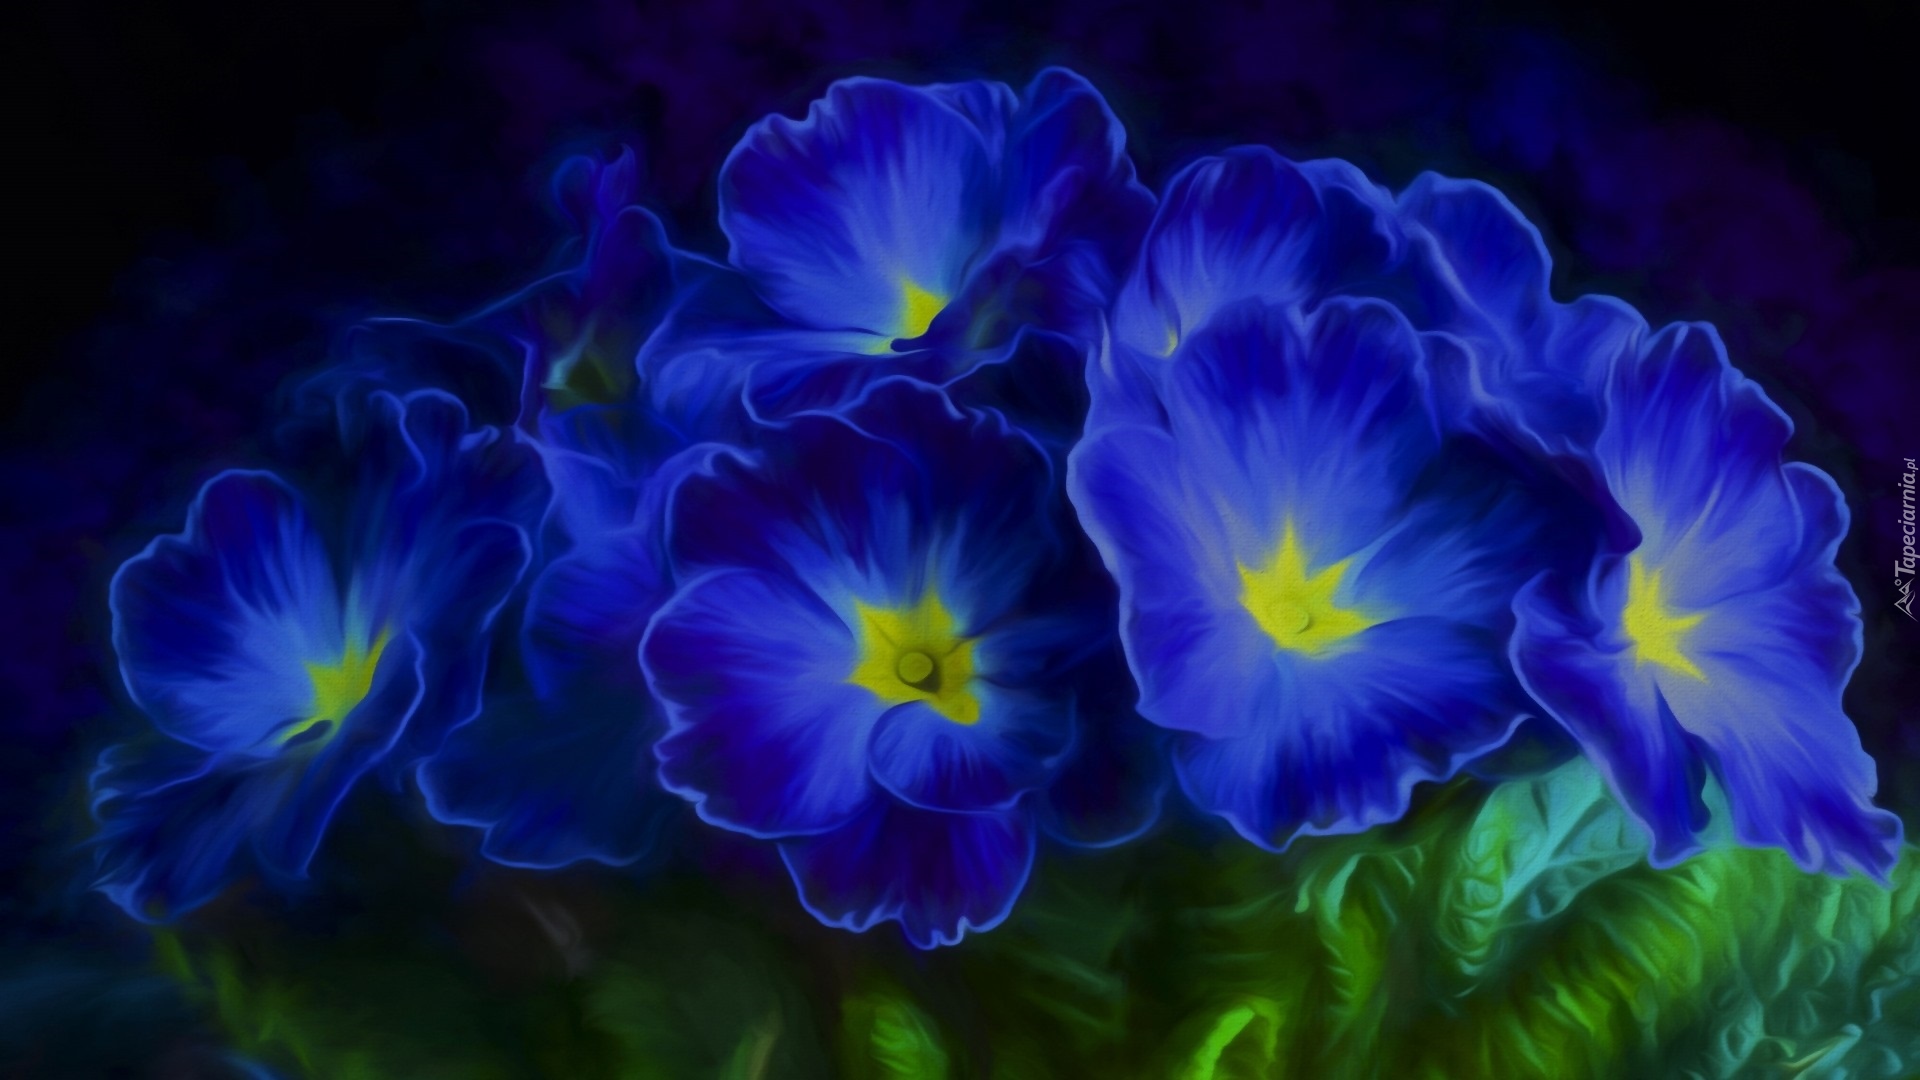 Niebieskie, Kwiaty, Prymulki, Grafika 2D